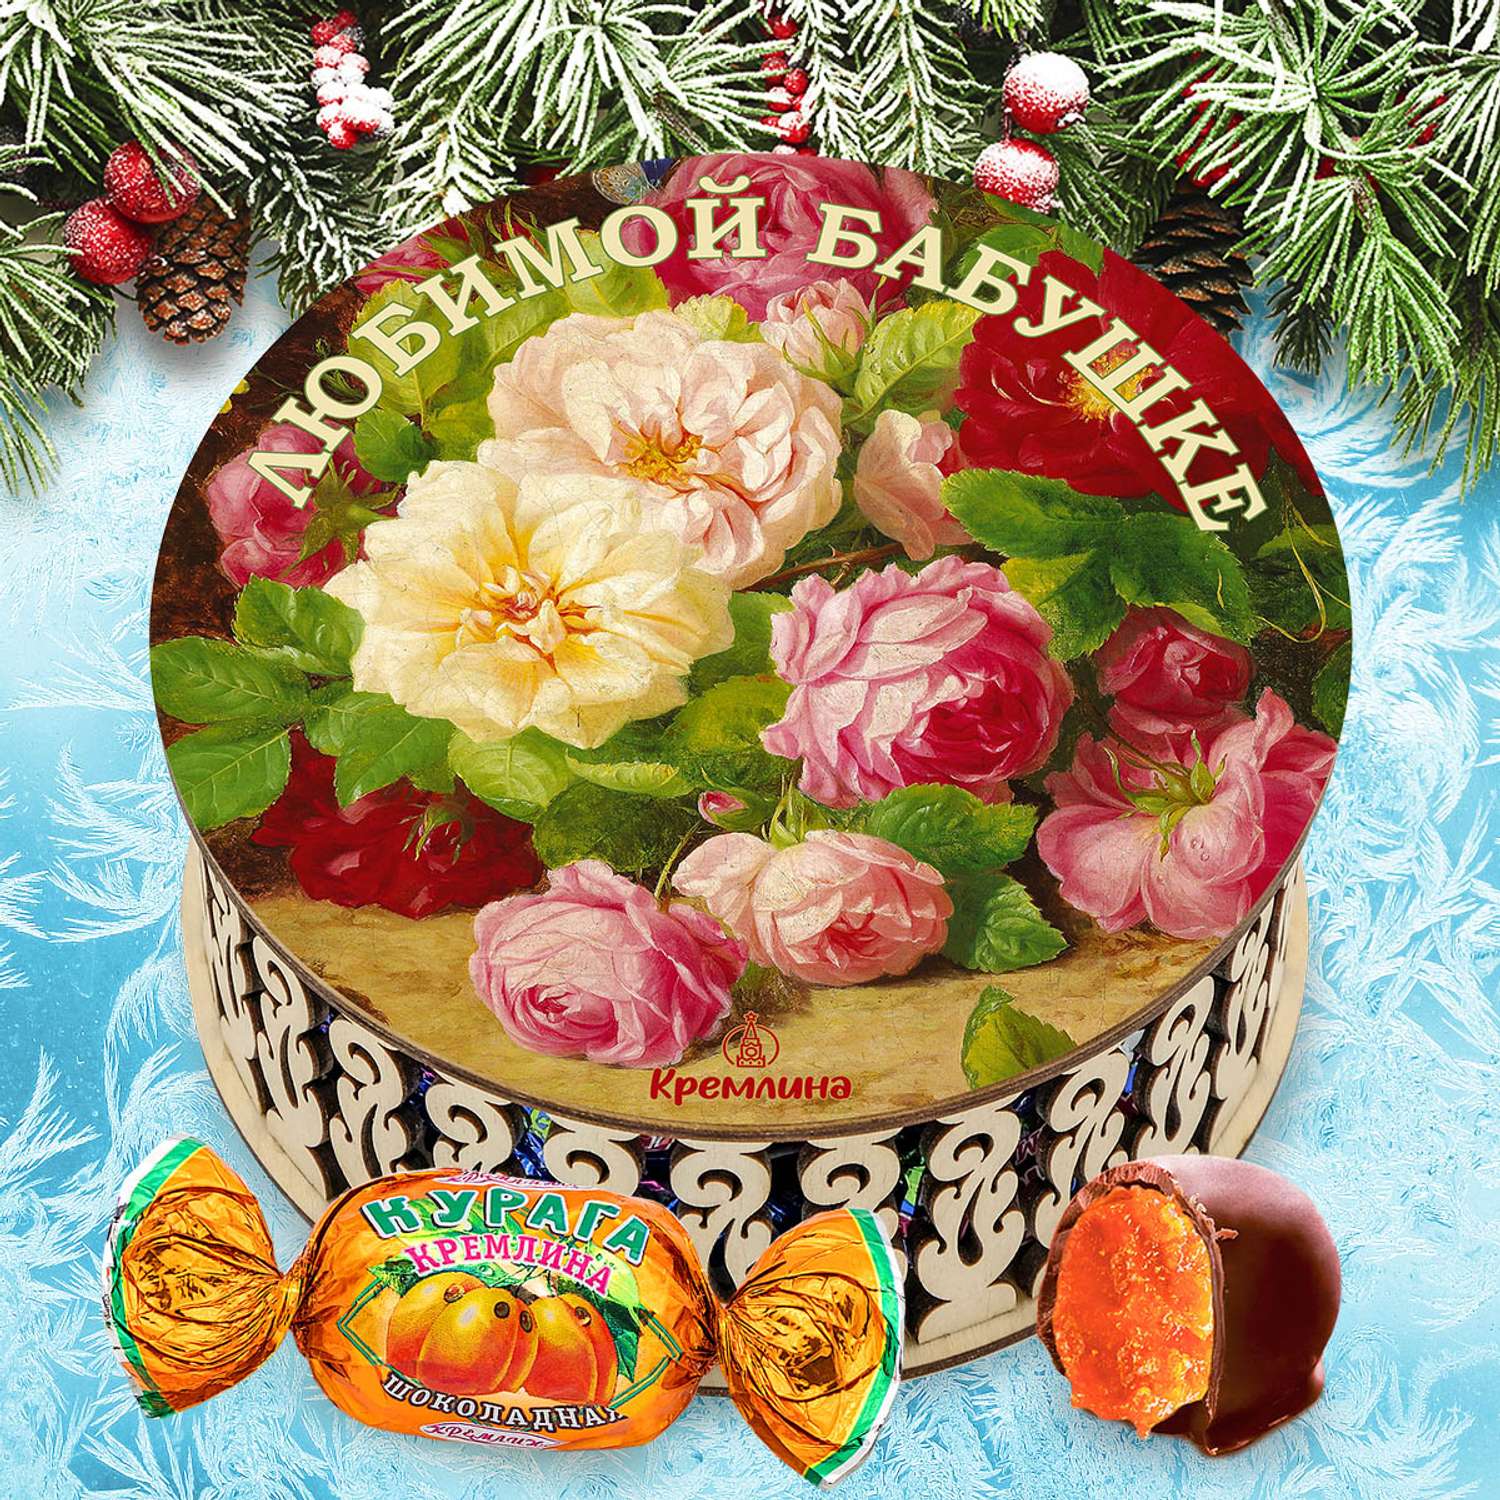 Конфеты Курага в глазури Кремлина в подарочной круглой шкатулке Любимой бабушке 400 г - фото 8